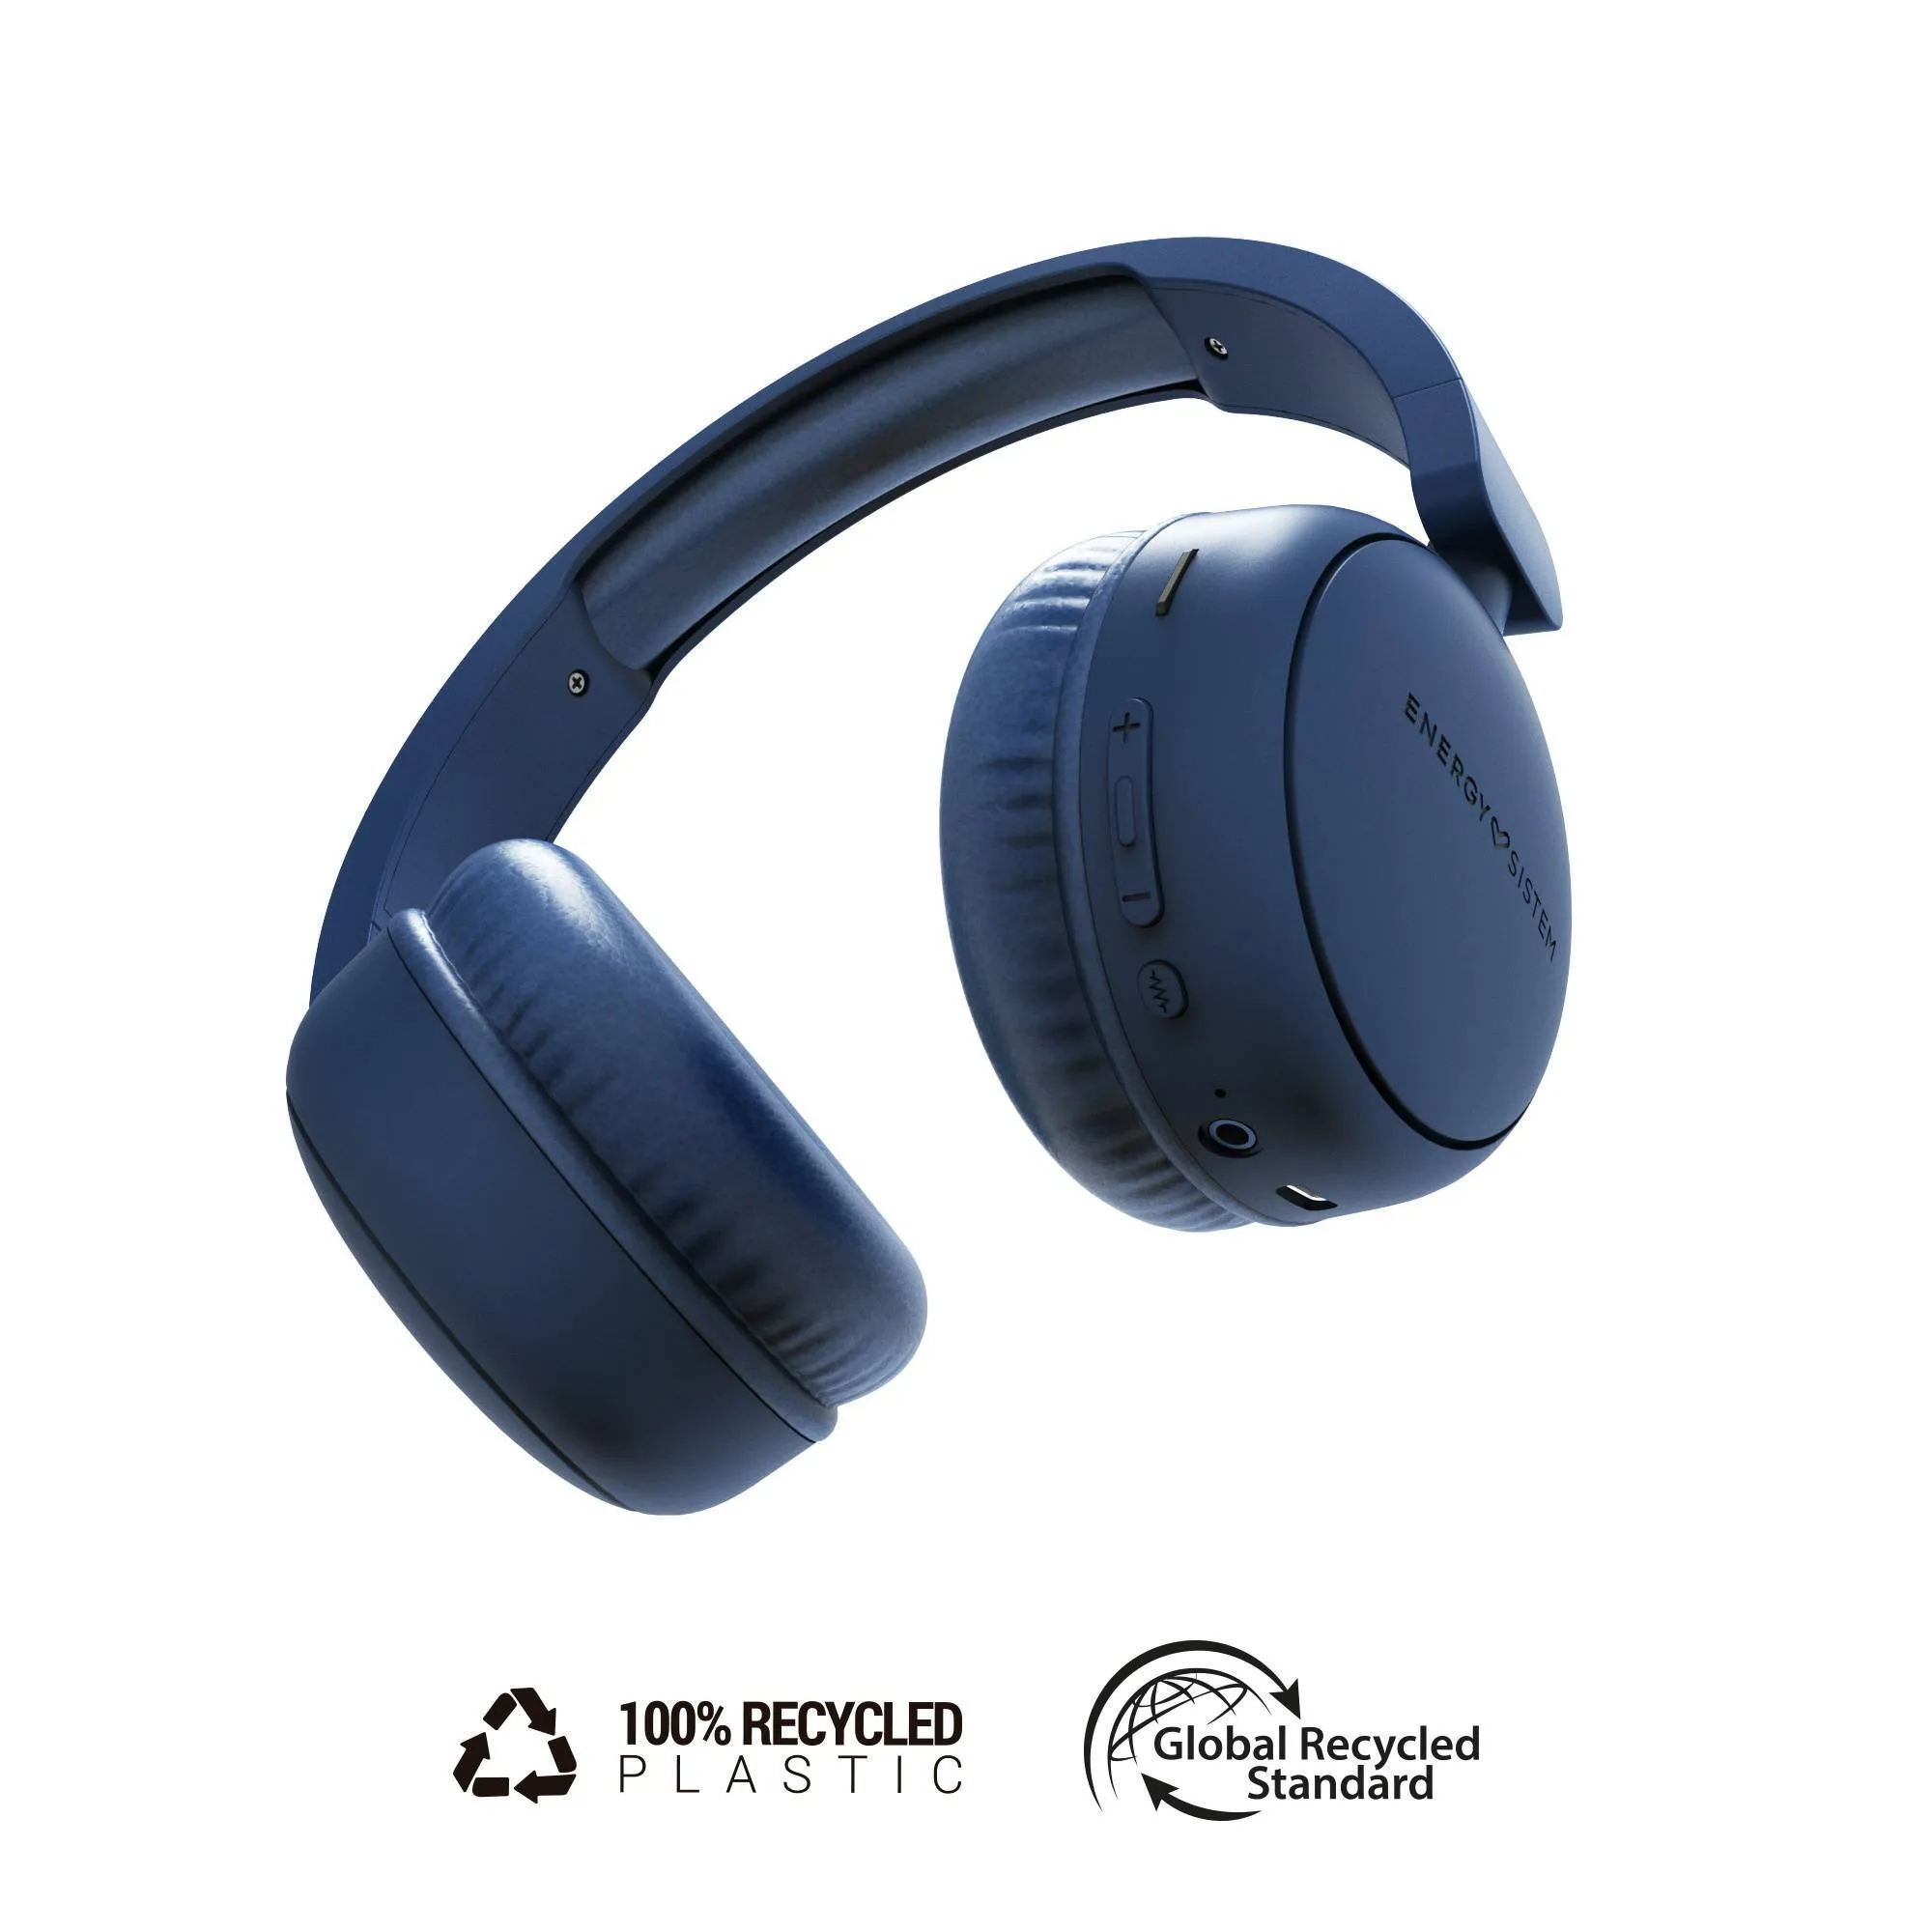 Audífonos Bluetooth Radio Color indigo fabricados con plástico 100% reciclado y hasta 16h de autonomía